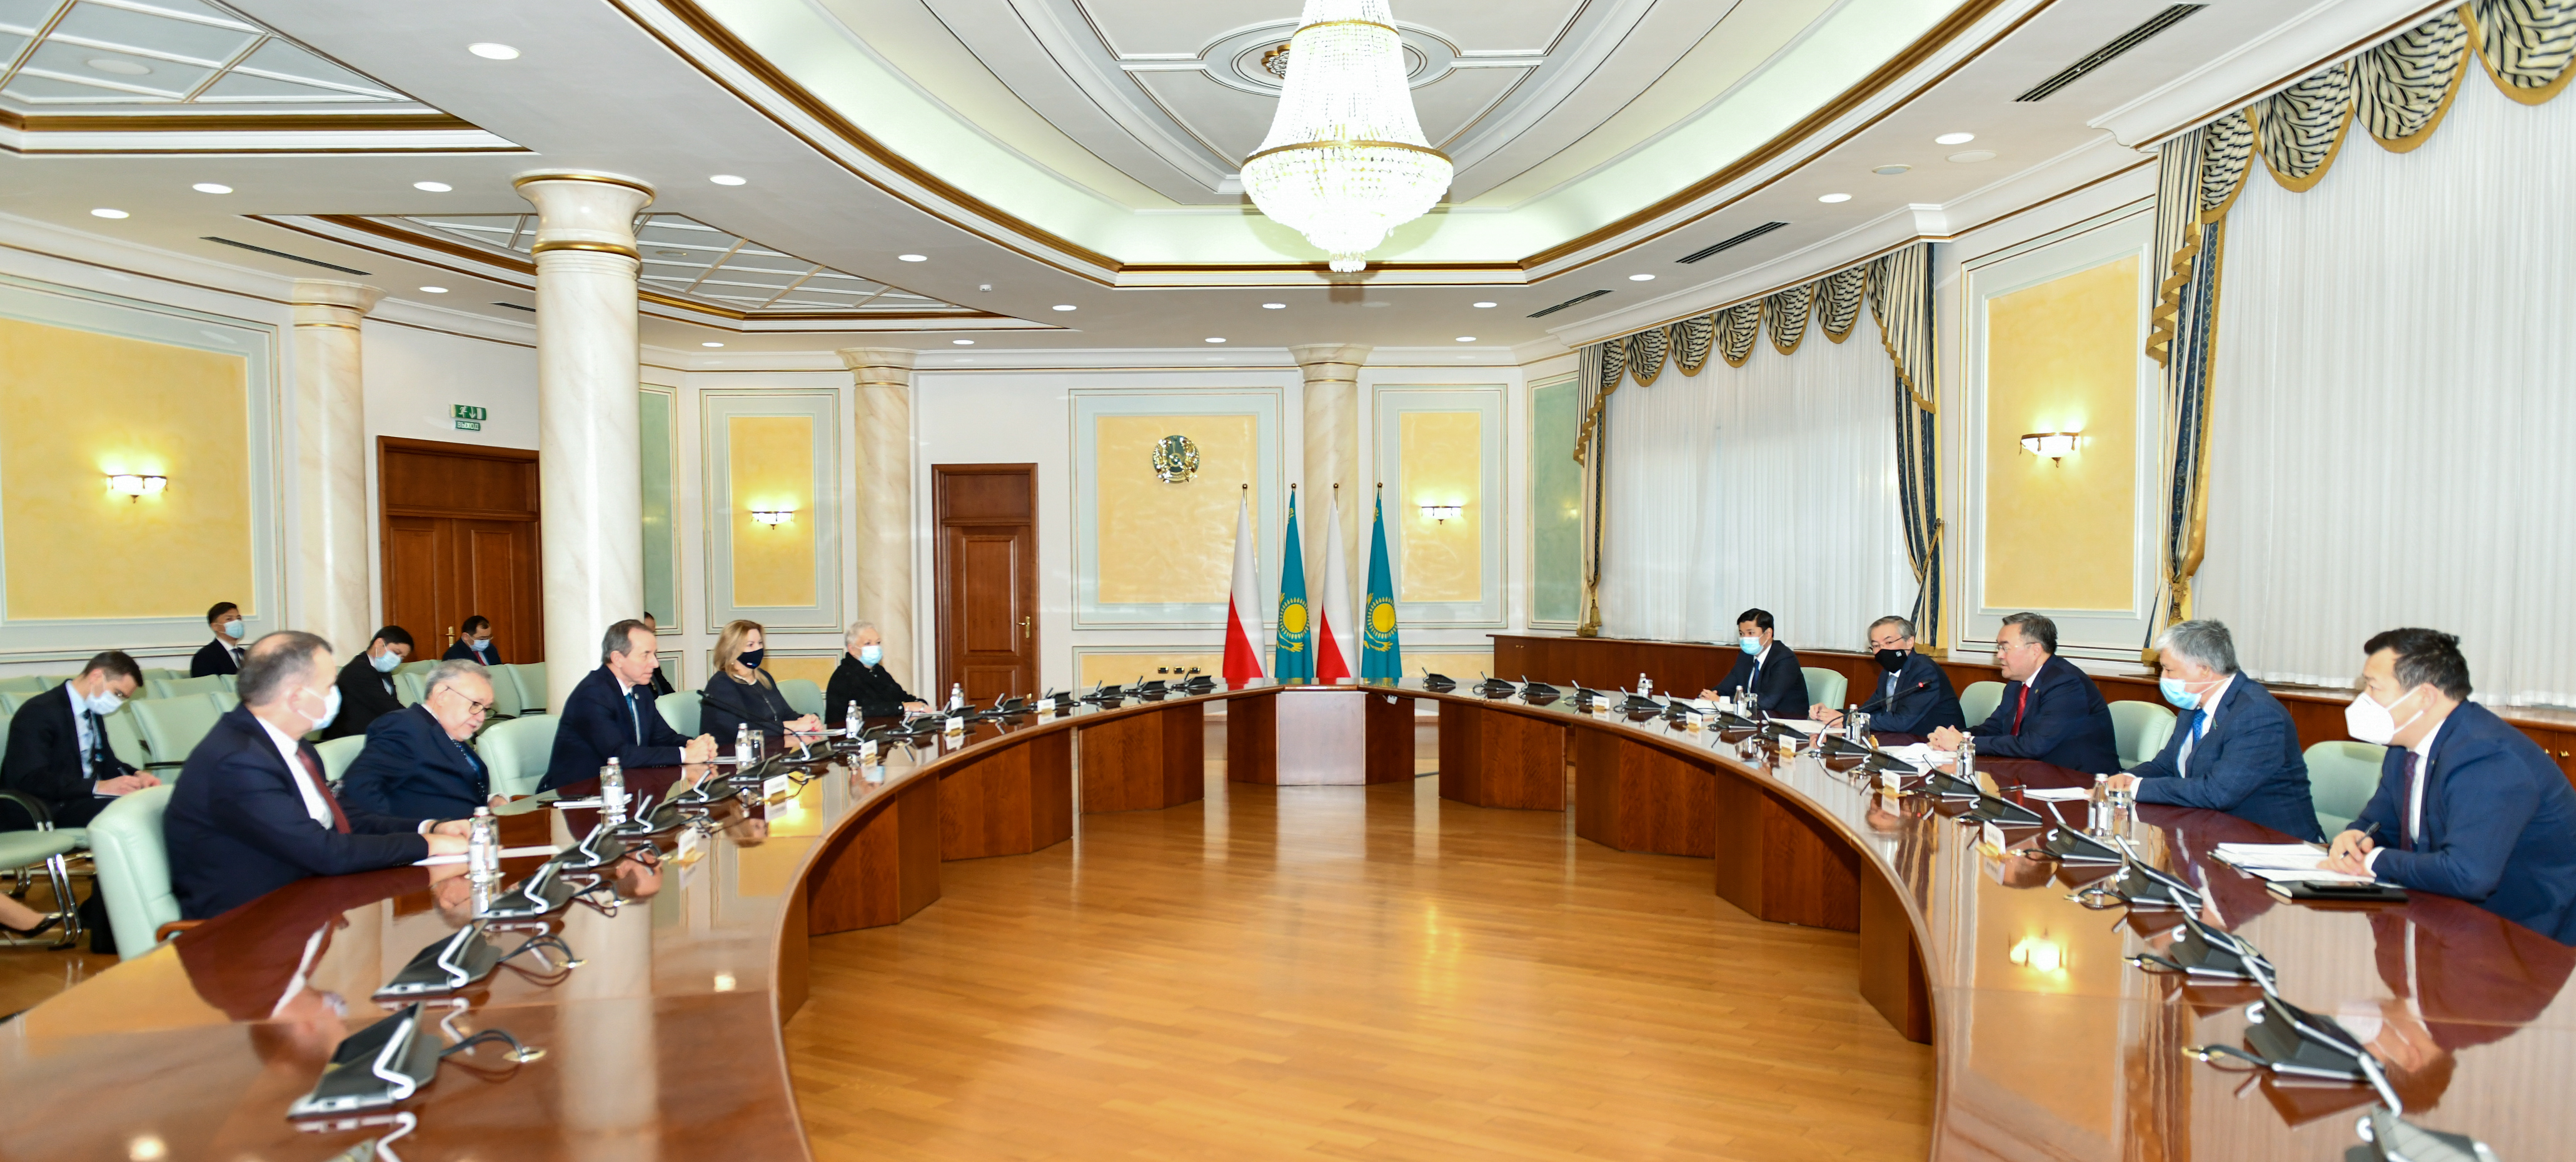 Перспективы сотрудничества с Польшей  обсуждены в Министерстве иностранных дел Казахстана